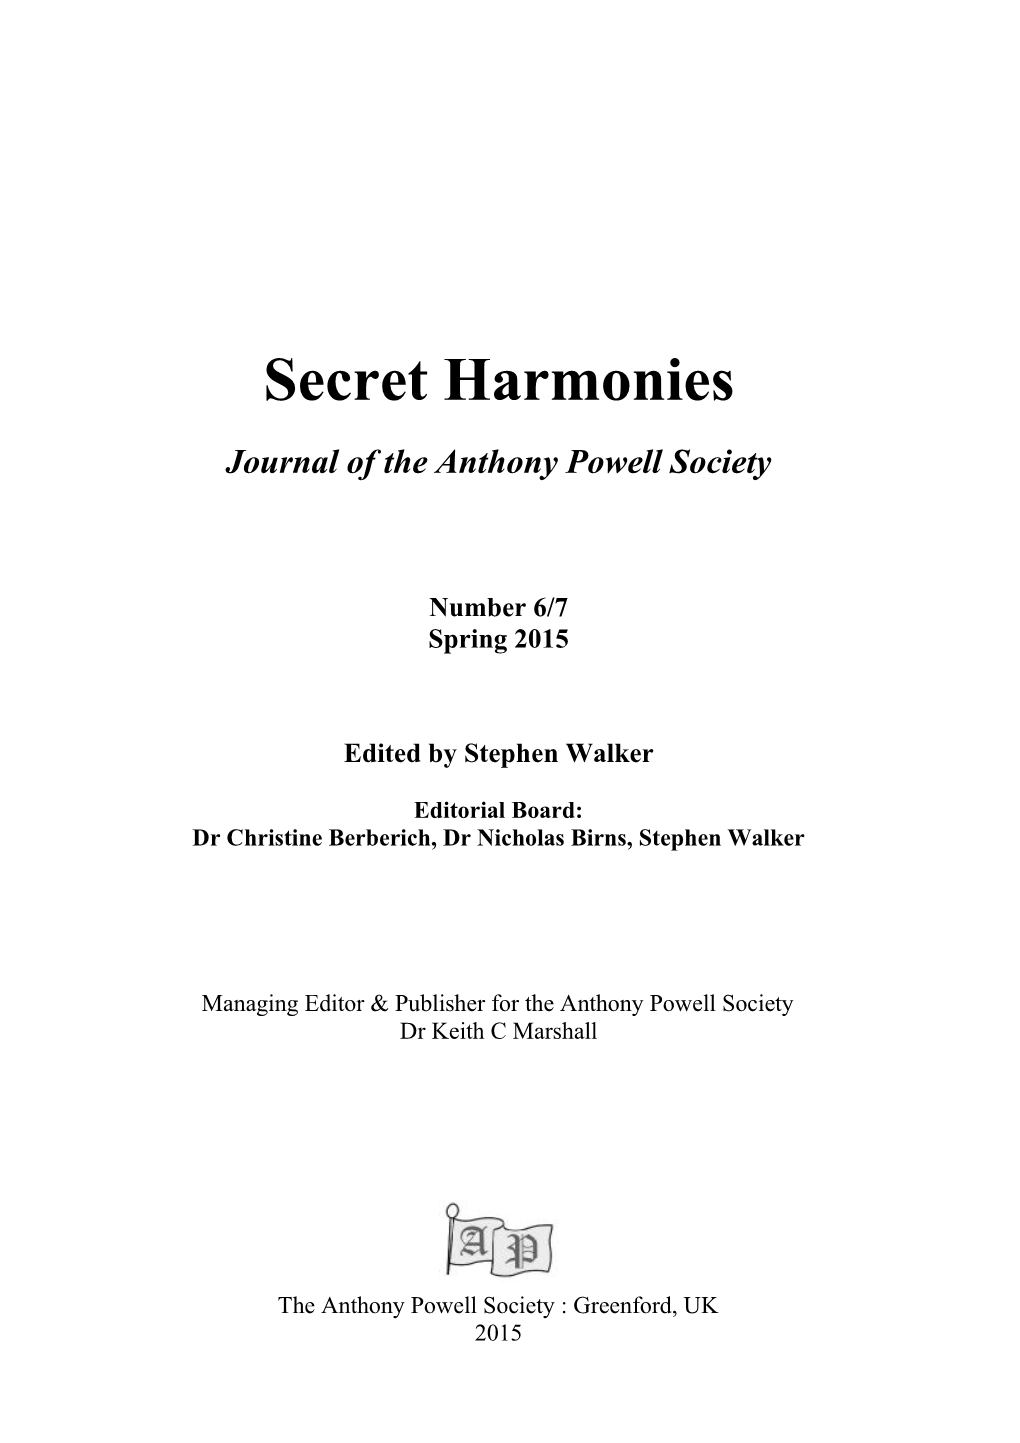 Secret Harmonies #6/7